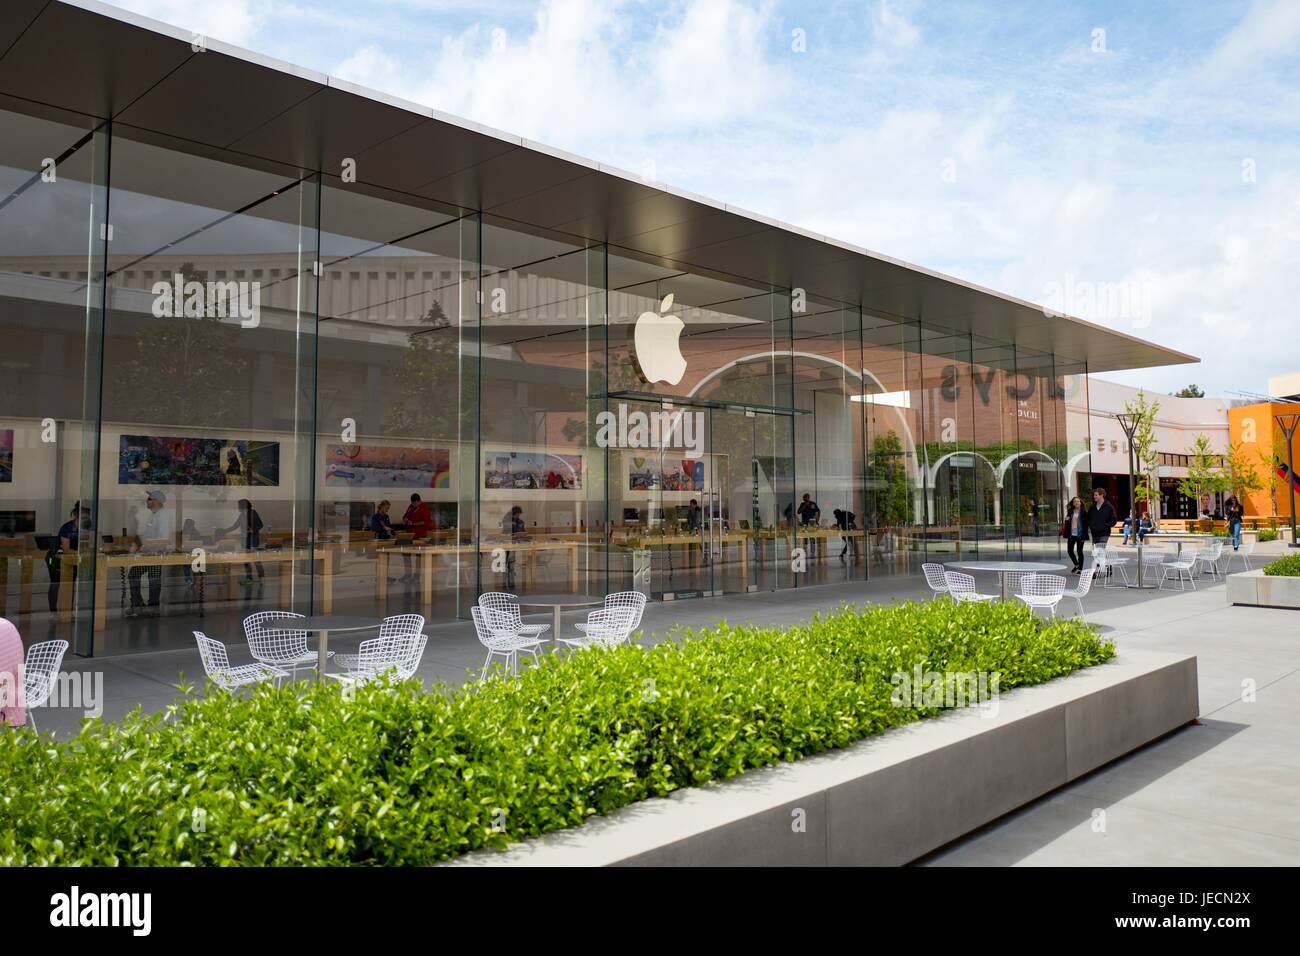 Façade en verre de l'Apple Store du Stanford Shopping Center, galerie marchande extérieure dans la Silicon Valley ville de Stanford, Californie, le 7 avril 2017. Banque D'Images